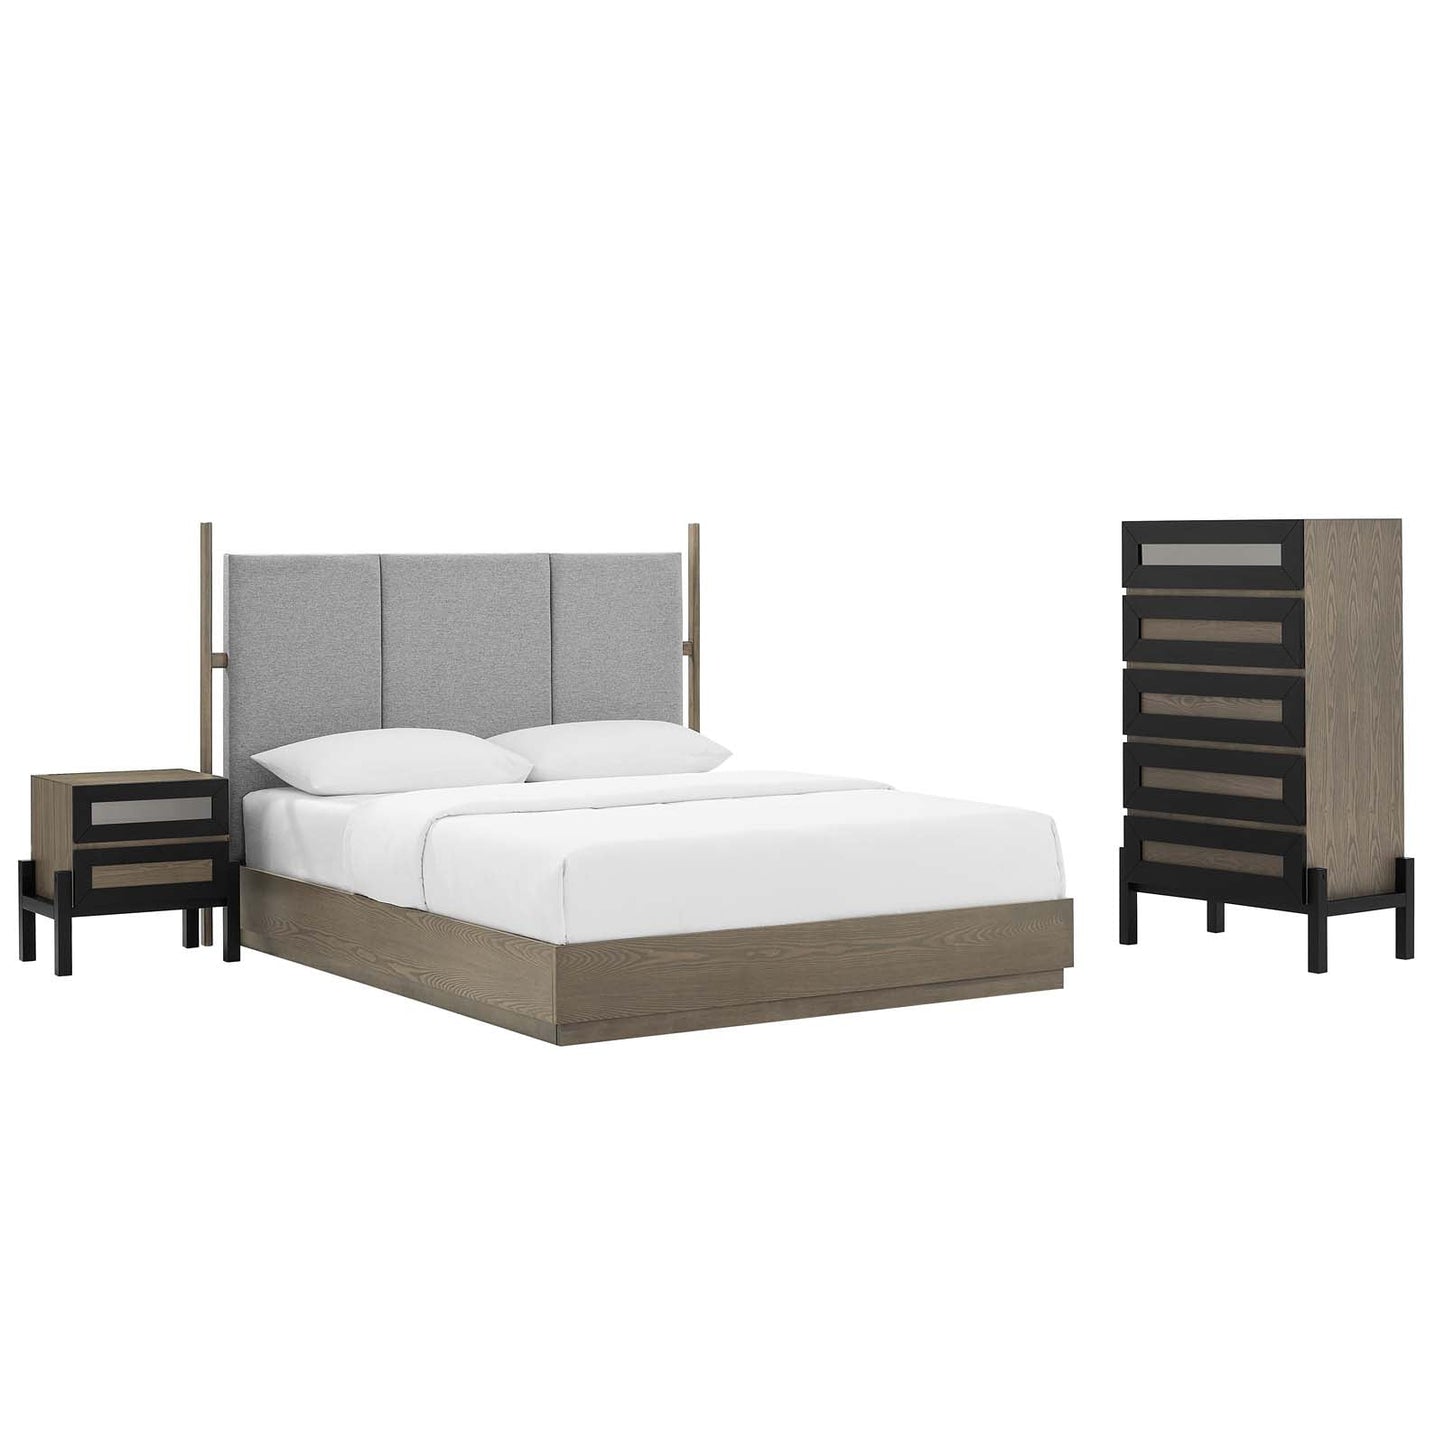 Modway Bedroom Furniture Sets Merritt 3 Piece Upholstered Queen Bedroom Set MOD-6955-OAK